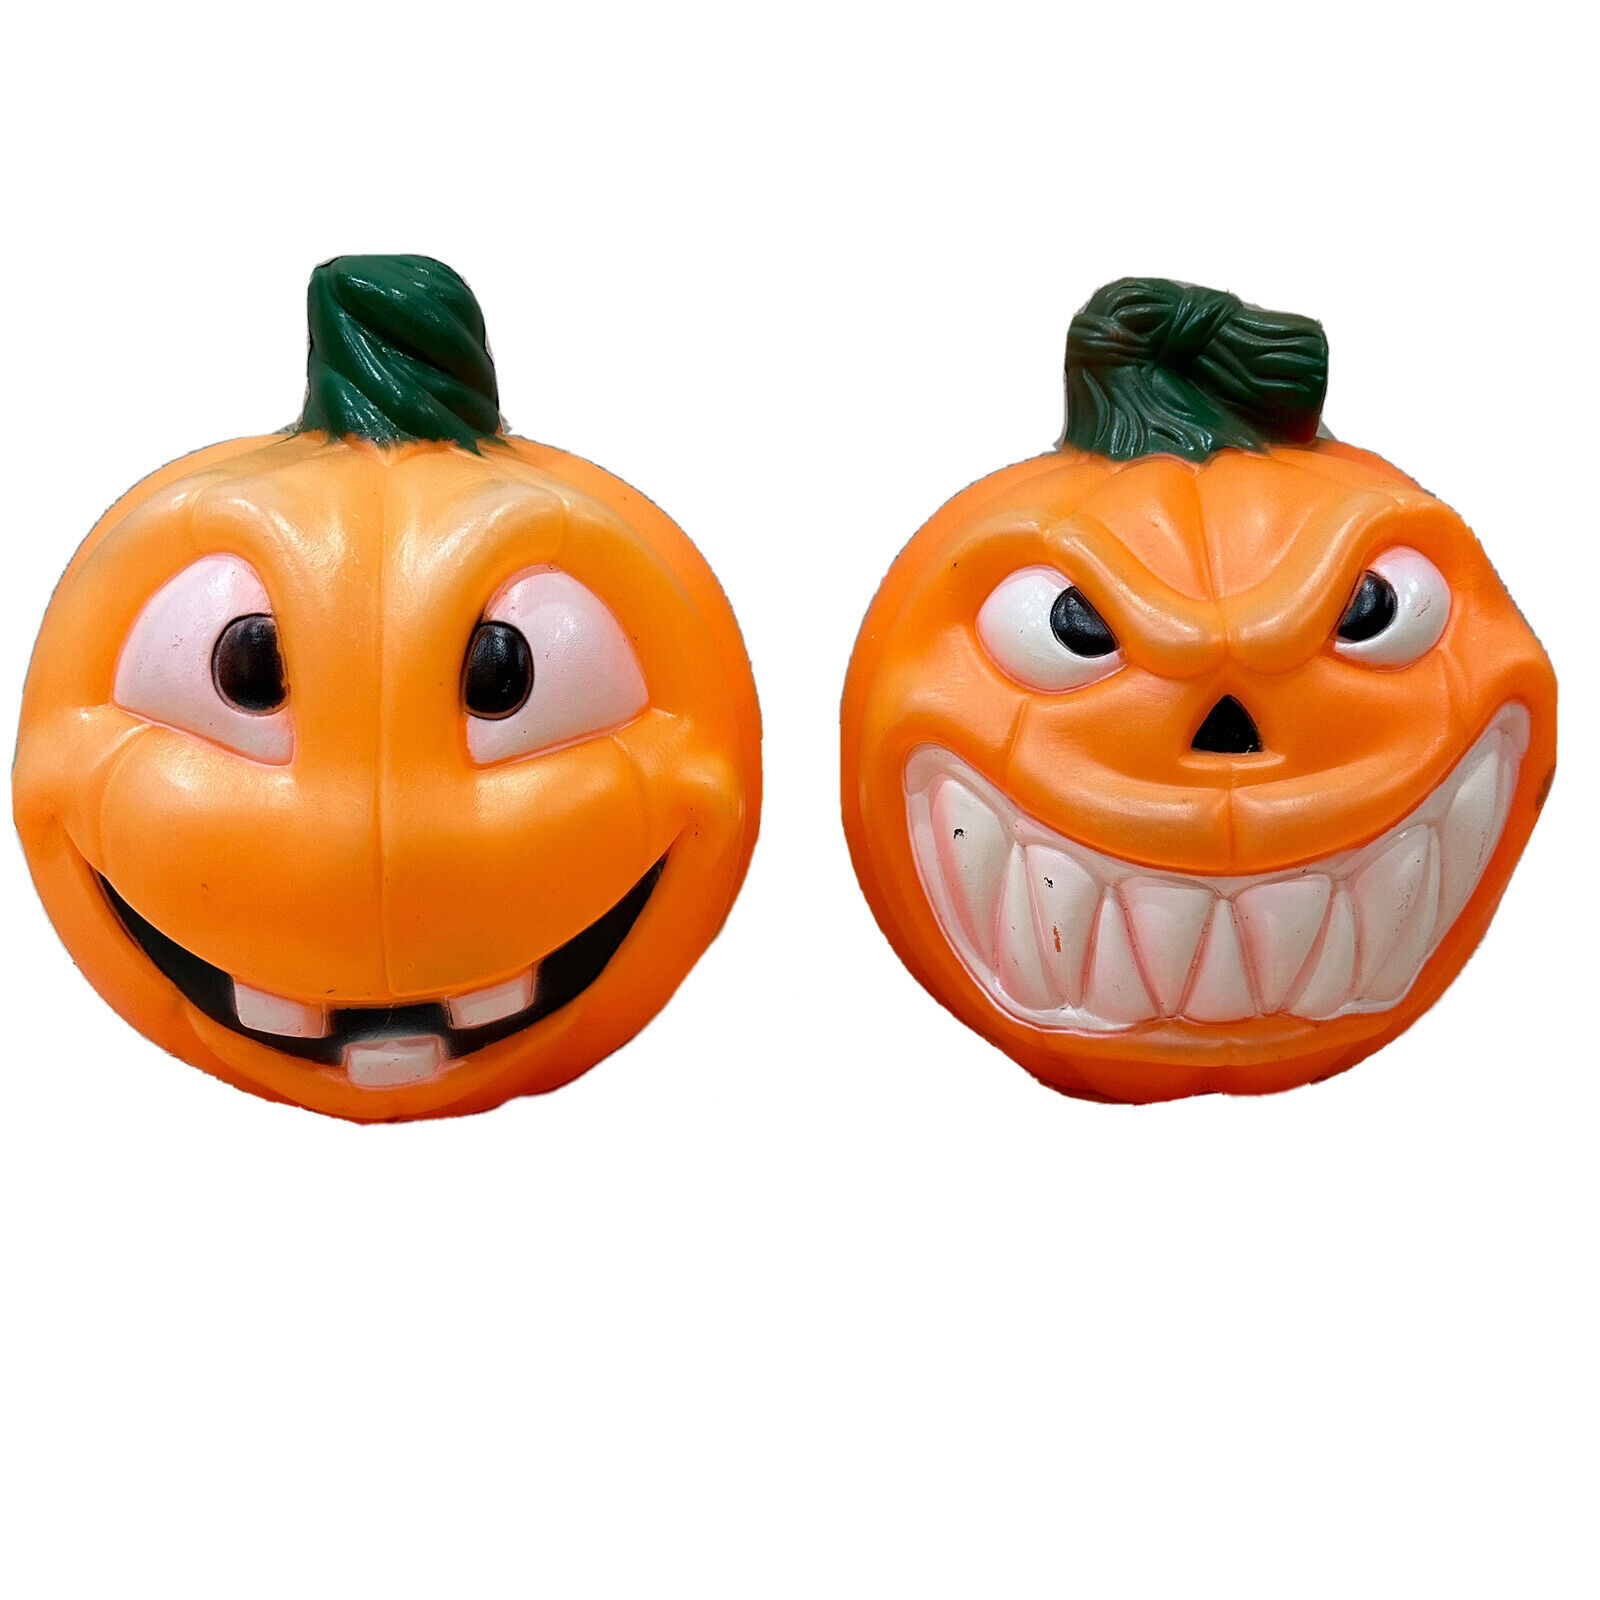 LOT OF 2 Vintage Lighted Halloween Pumpkin Blow Mold Jack-O-Lantern WORKS